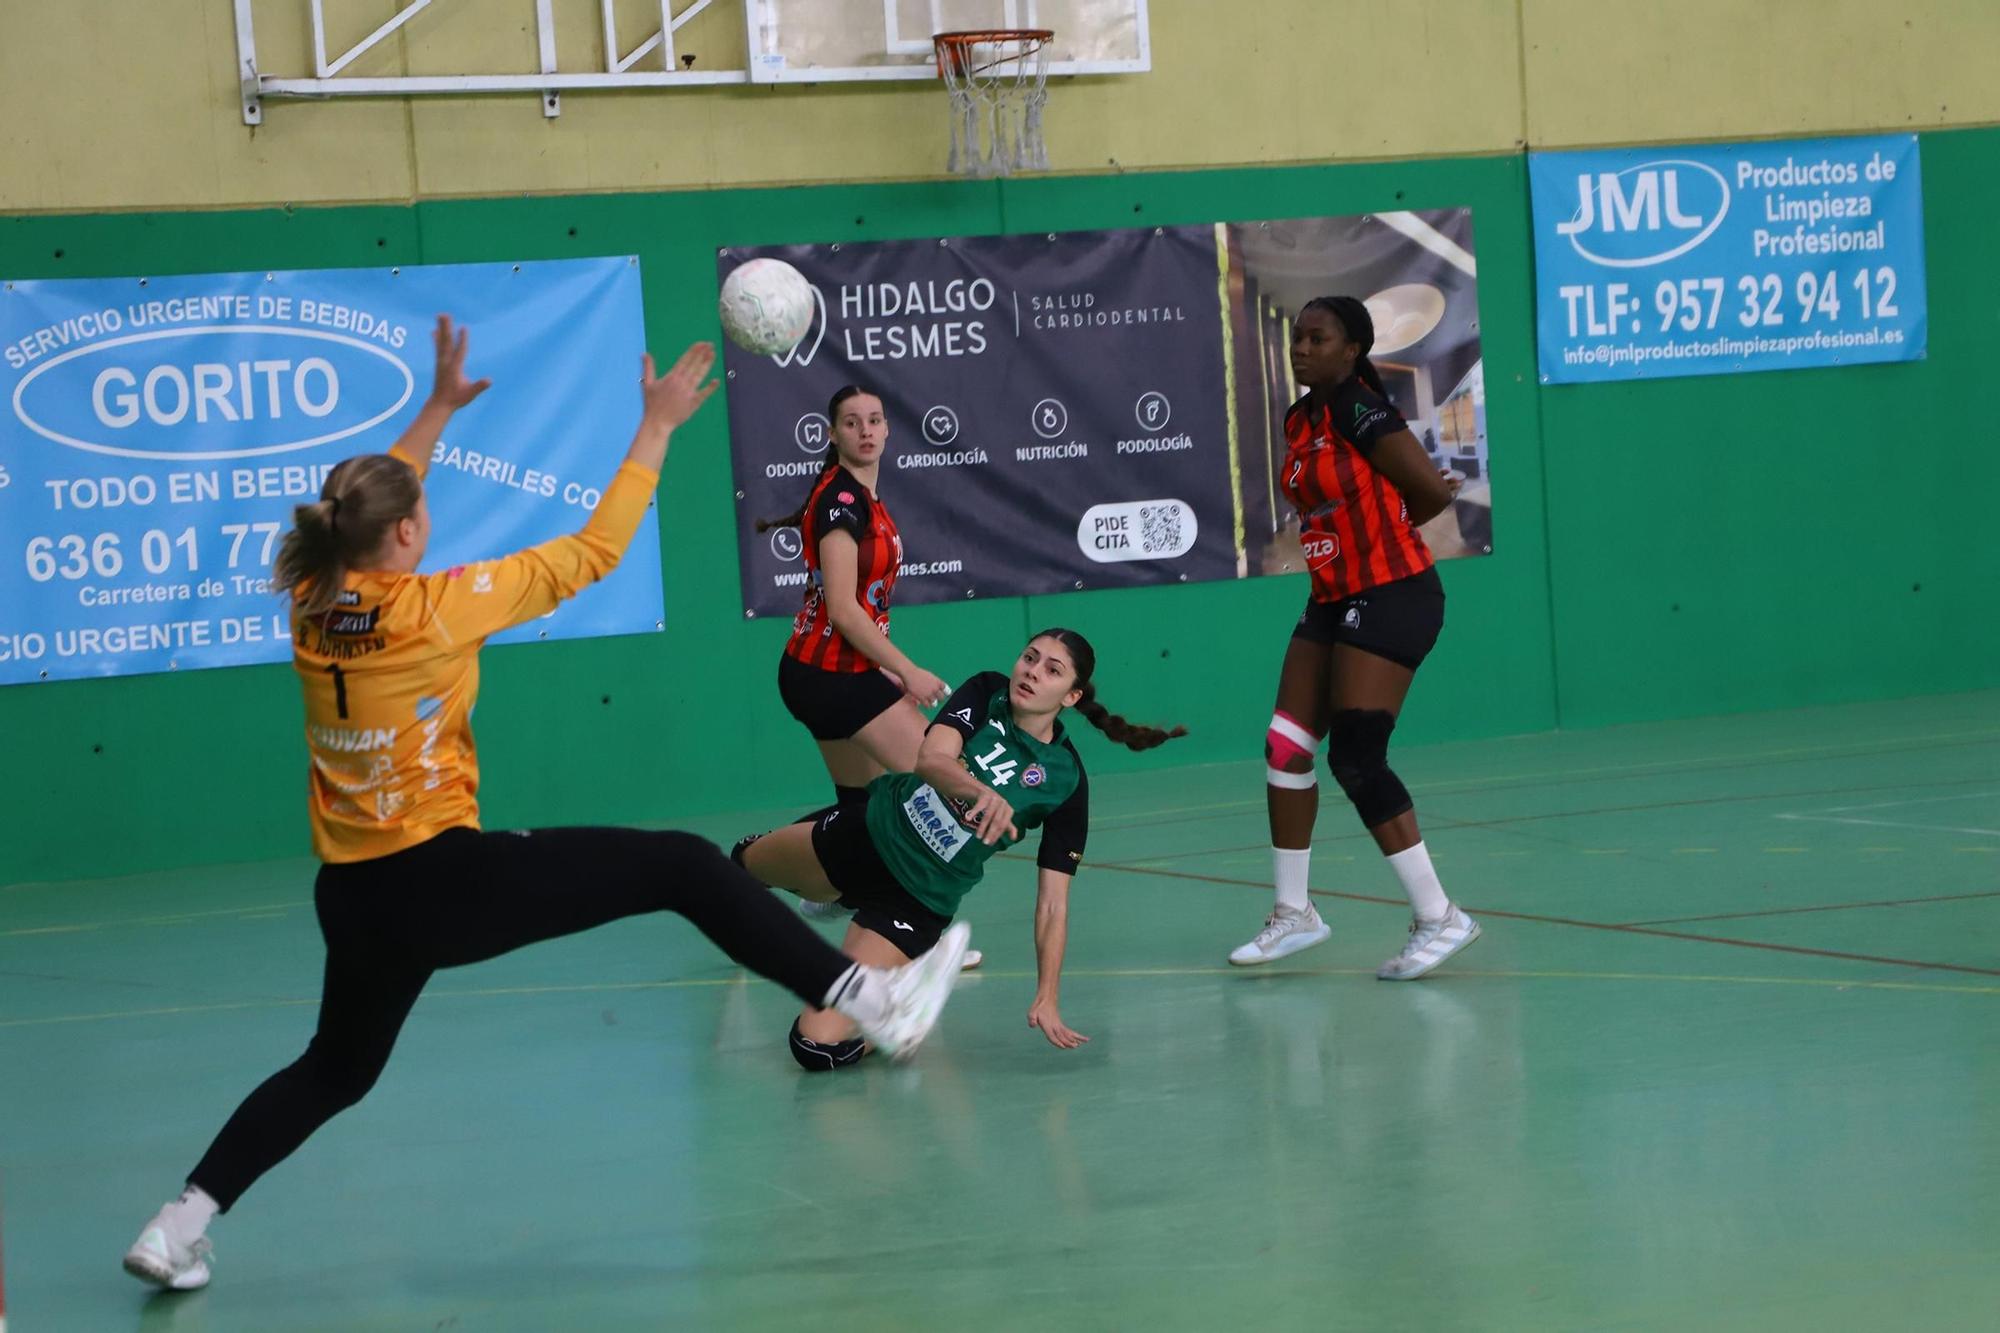 Adesal - Deza Cajasur : el derbi del balonmano femenino cordobés en imágenes